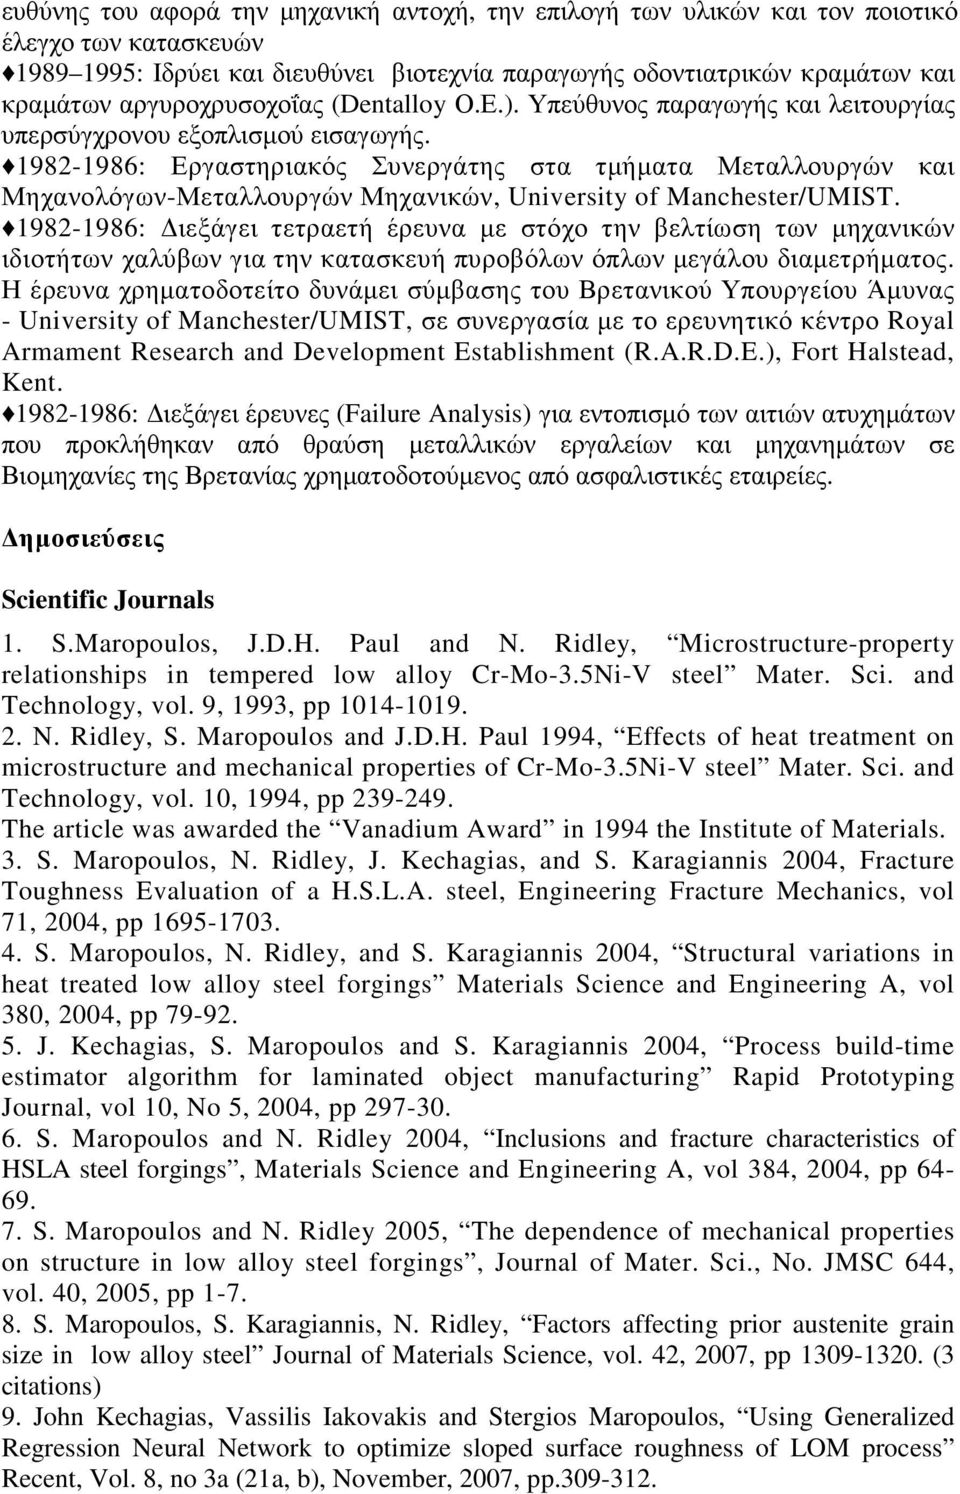 1982-1986: Εργαστηριακός Συνεργάτης στα τµήµατα Μεταλλουργών και Μηχανολόγων-Μεταλλουργών Μηχανικών, University of Manchester/UMIST.